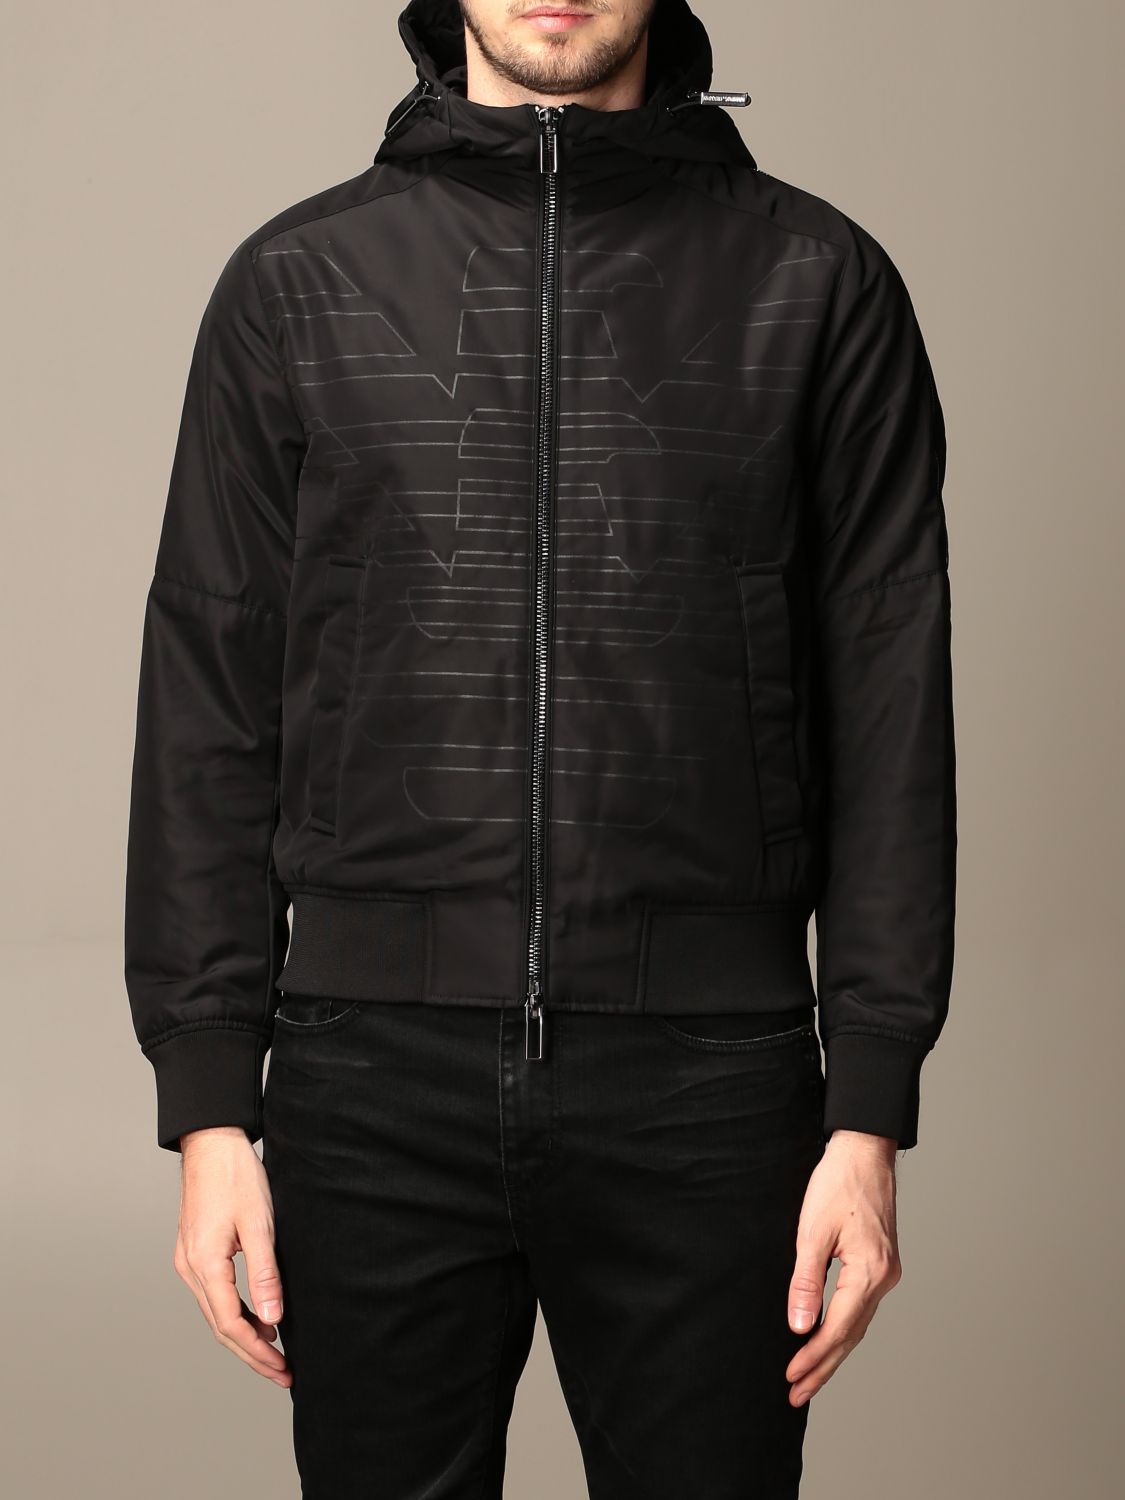 armani black jacket